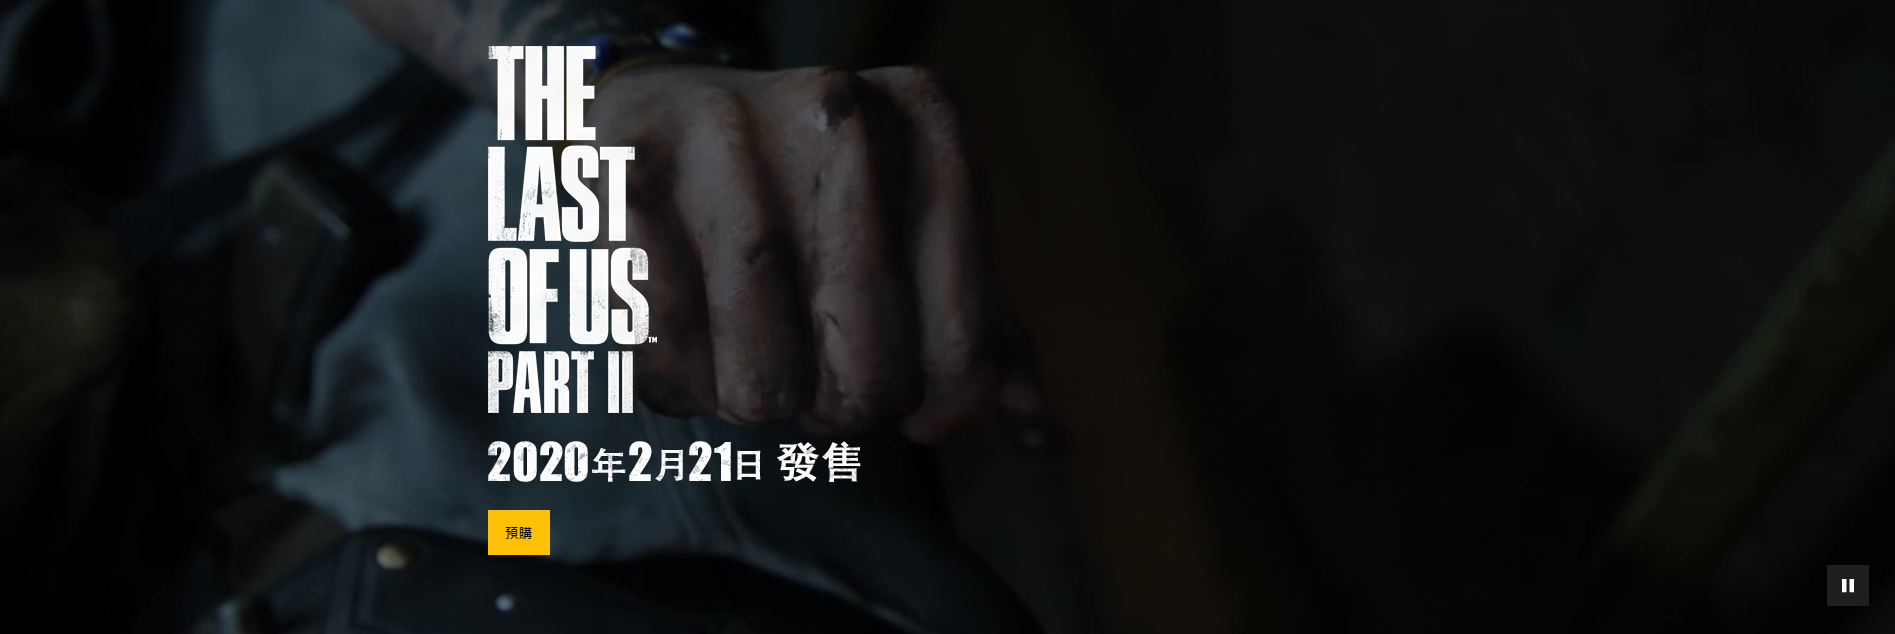 《最初死借者2》中文专题网站上线 欣赏31张下浑截图